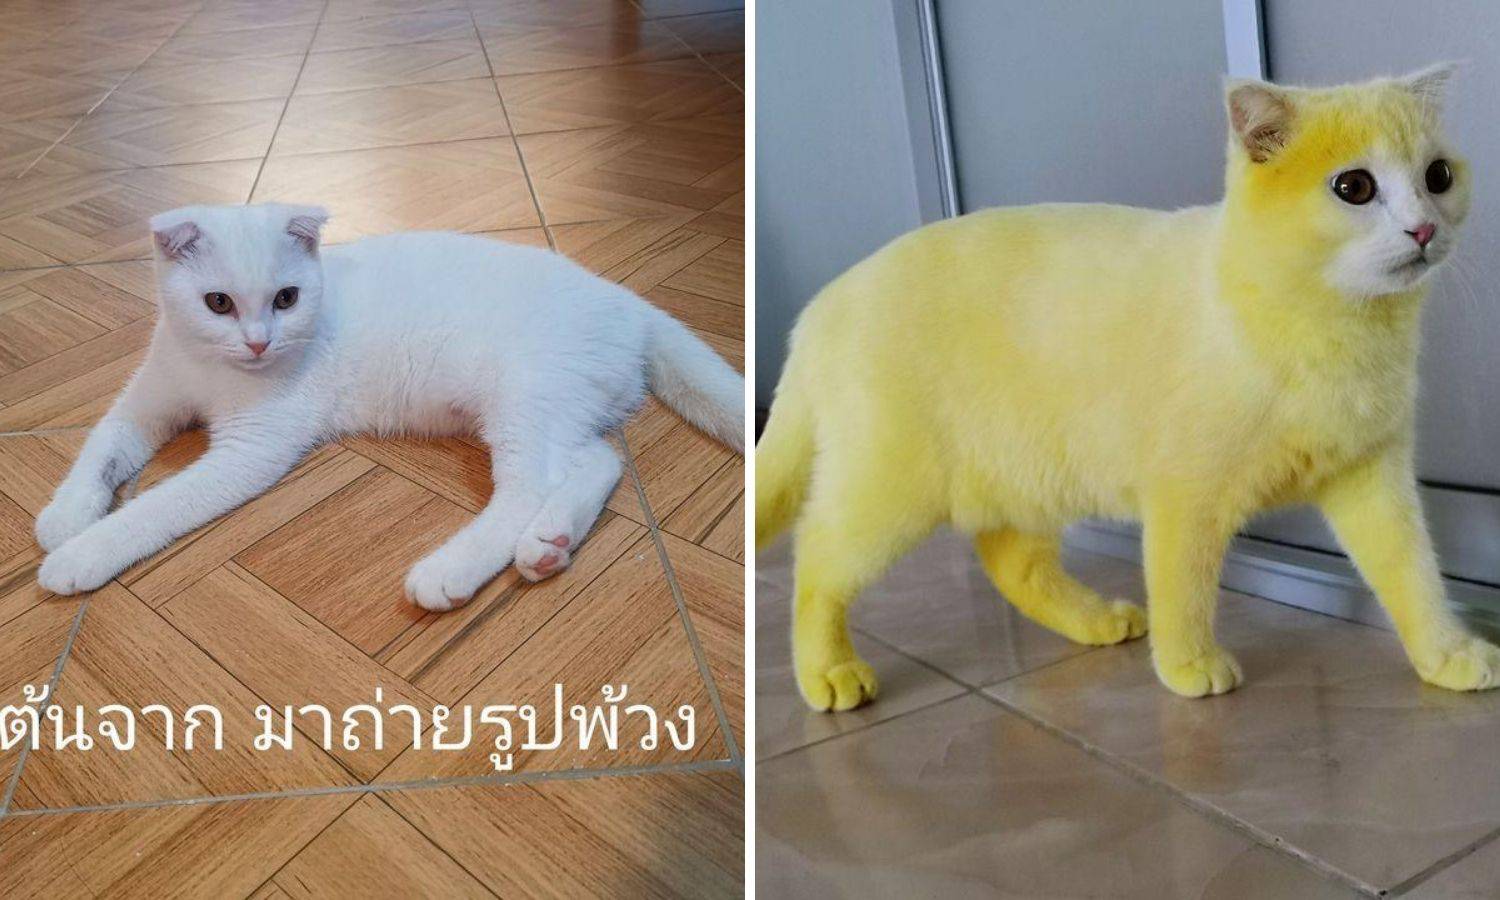 Mački liječila gljivičnu infekciju kurkumom: Postala je Pikachu